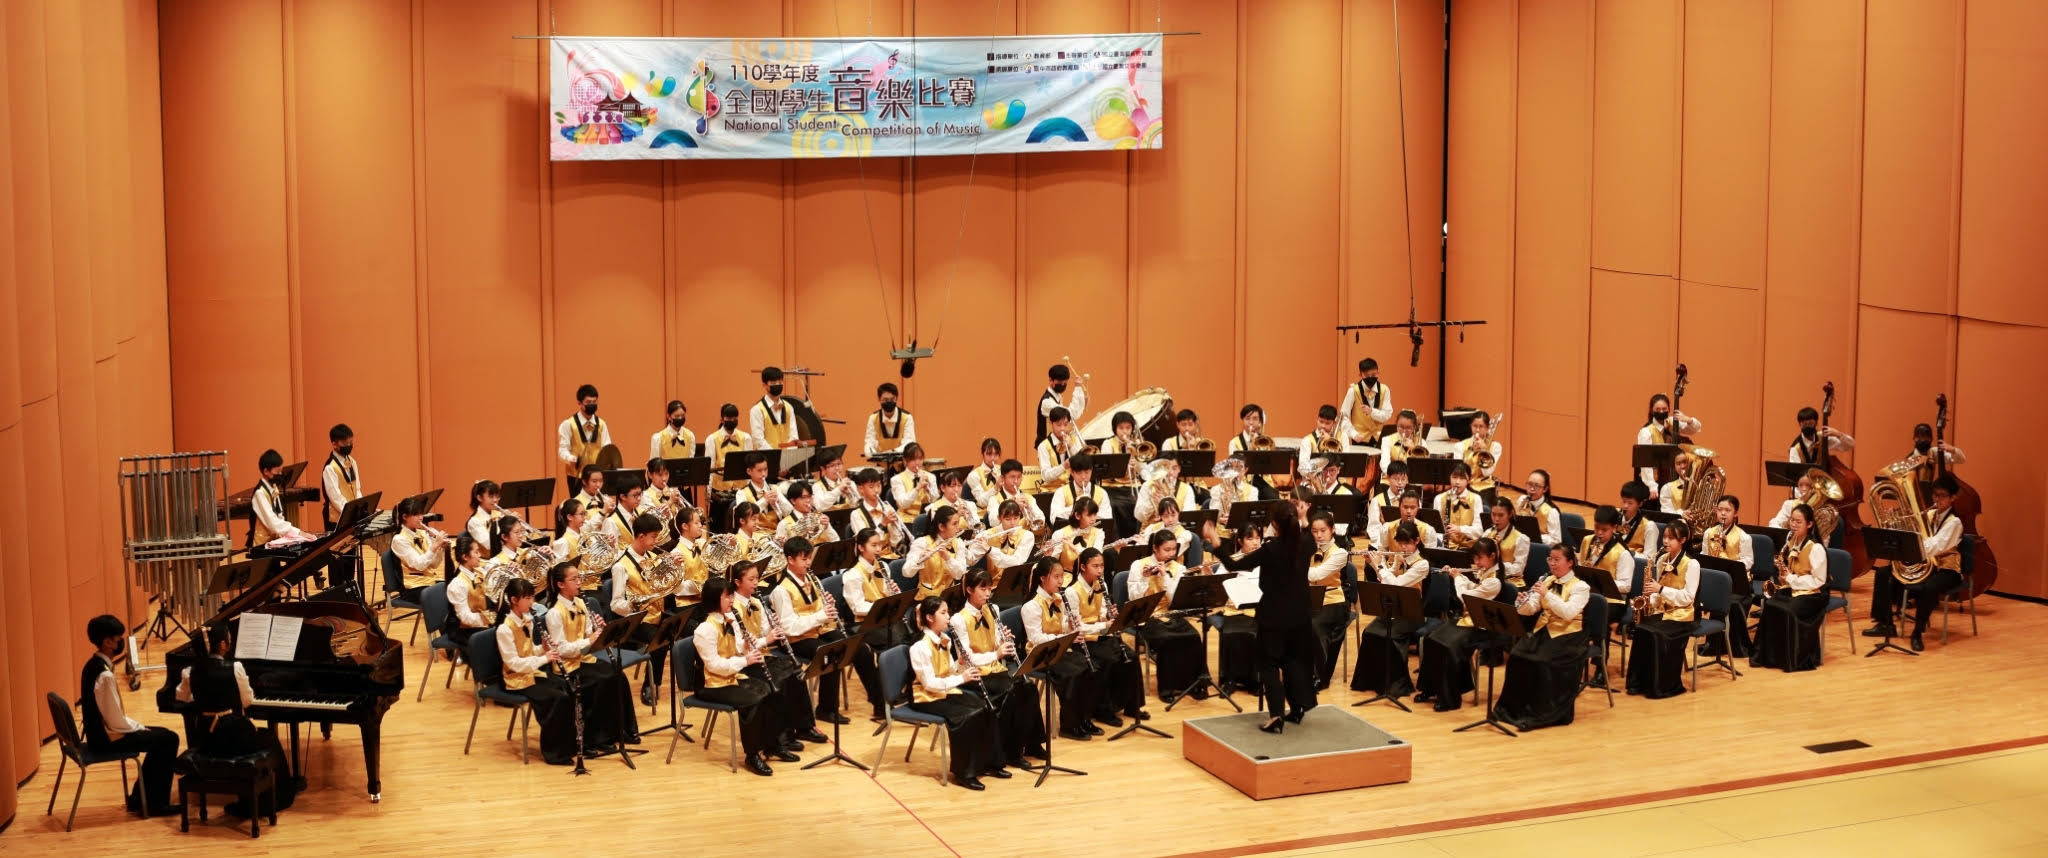 臺中市安和國中第16屆音樂班成果發表會《夢響啟航》、共1張圖片